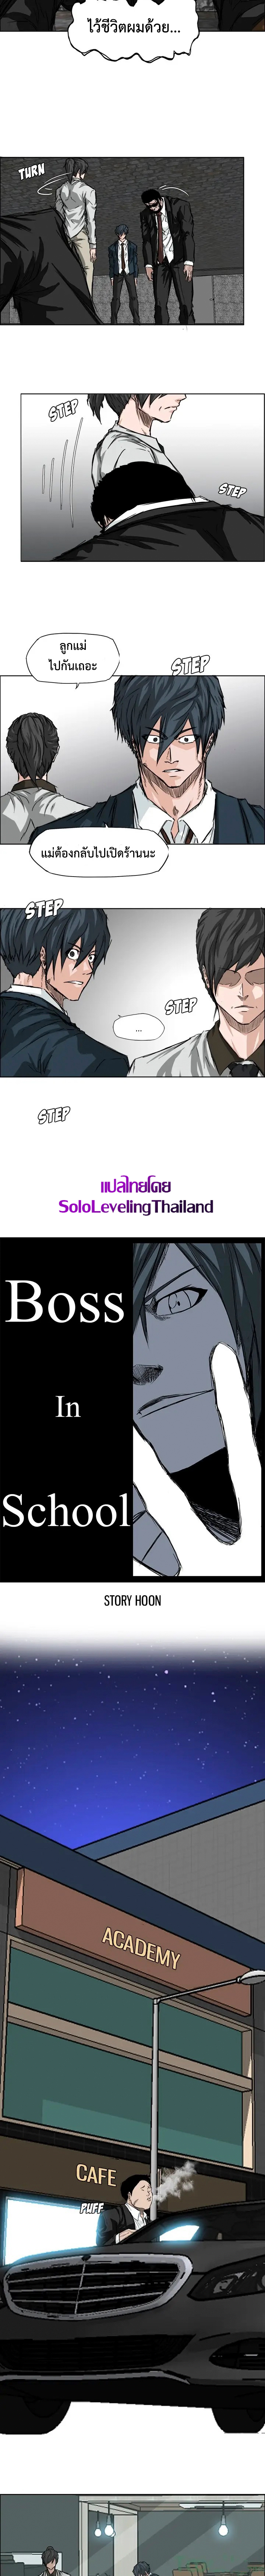 Boss in School28 (5)